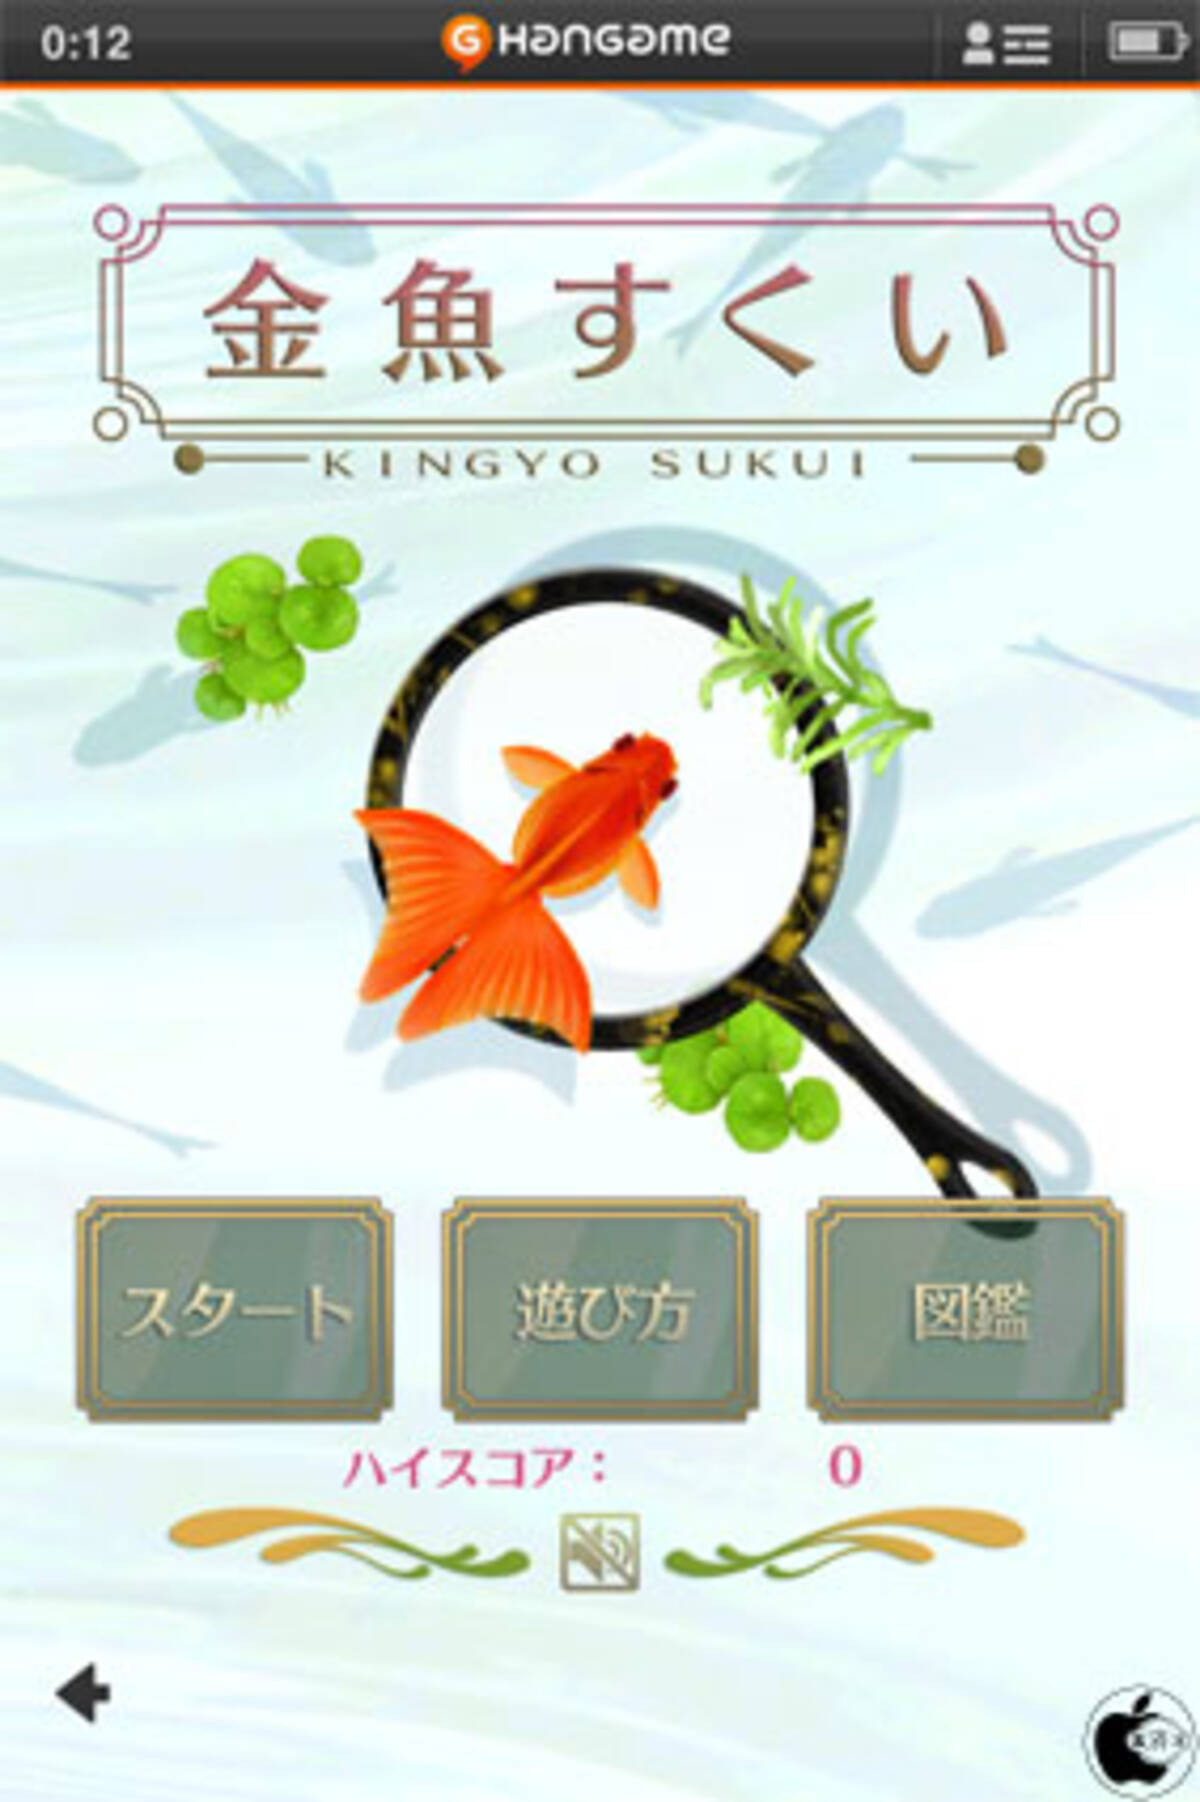 金魚すくいゲームアプリ 金魚すくい By Hangame を試す 2012年5月2